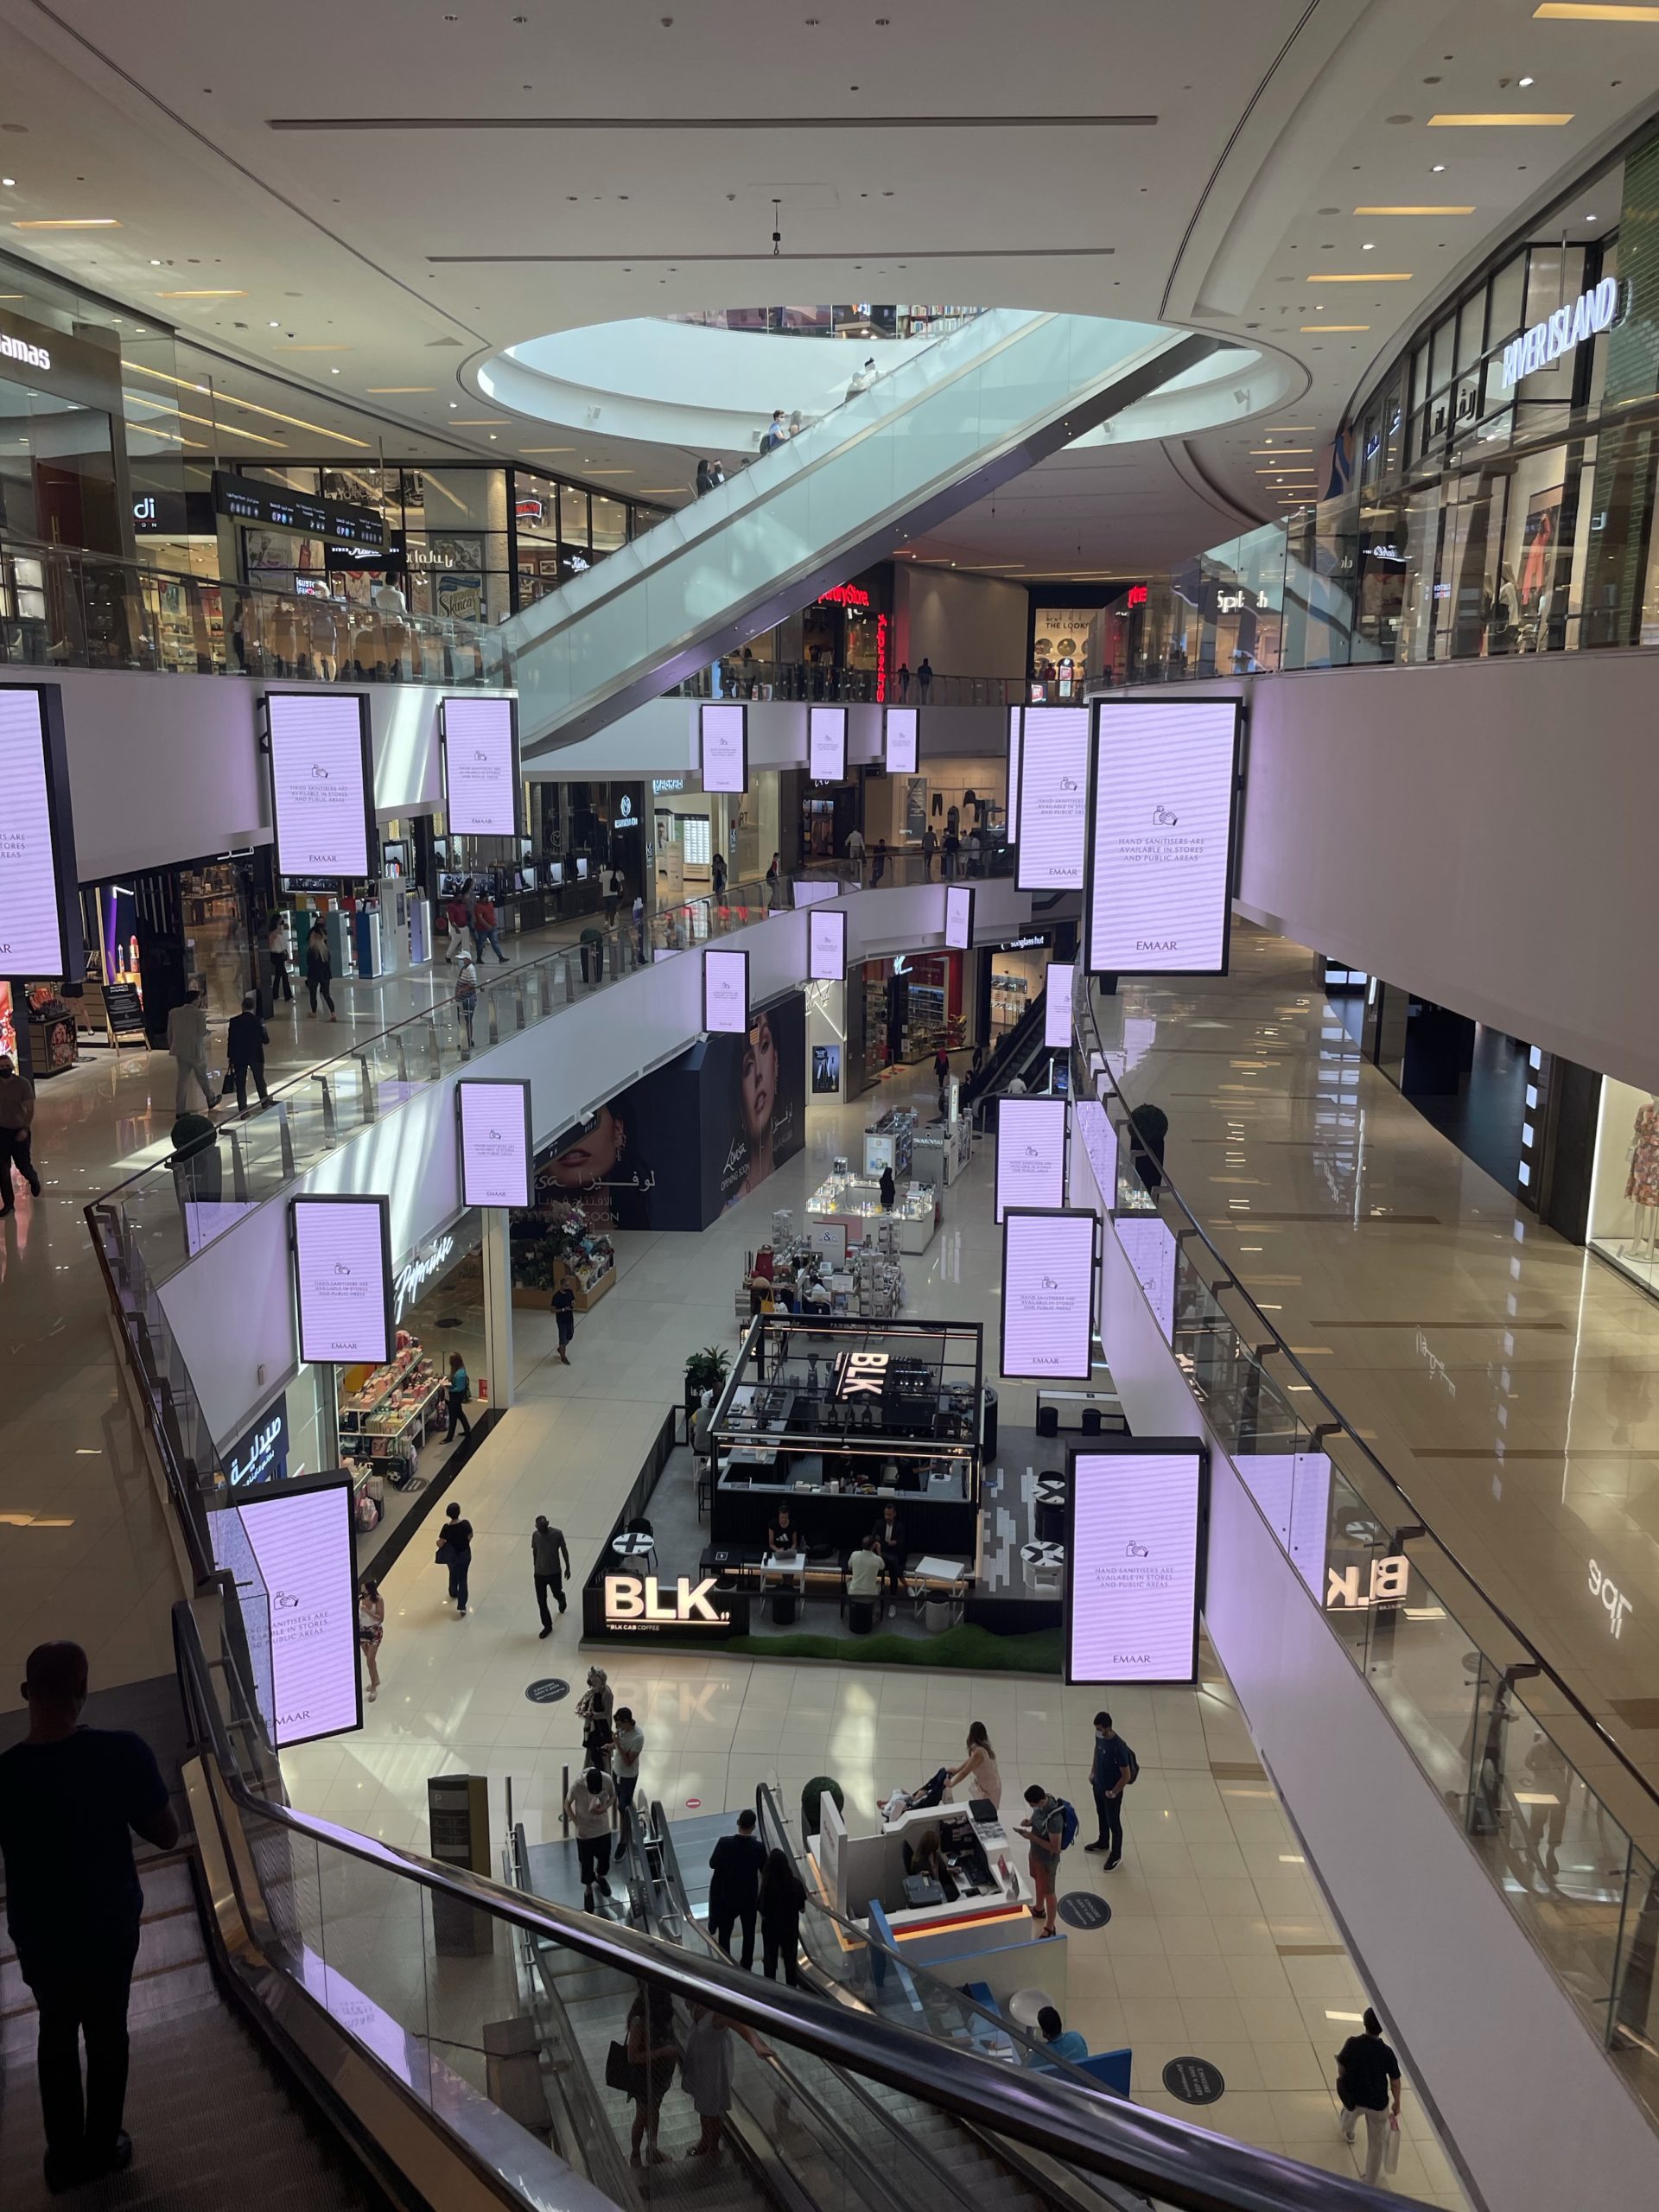 Vue de l’intérieur du plus grand centre commercial du monde : le Dubai Mall. Vue de l’escalator.